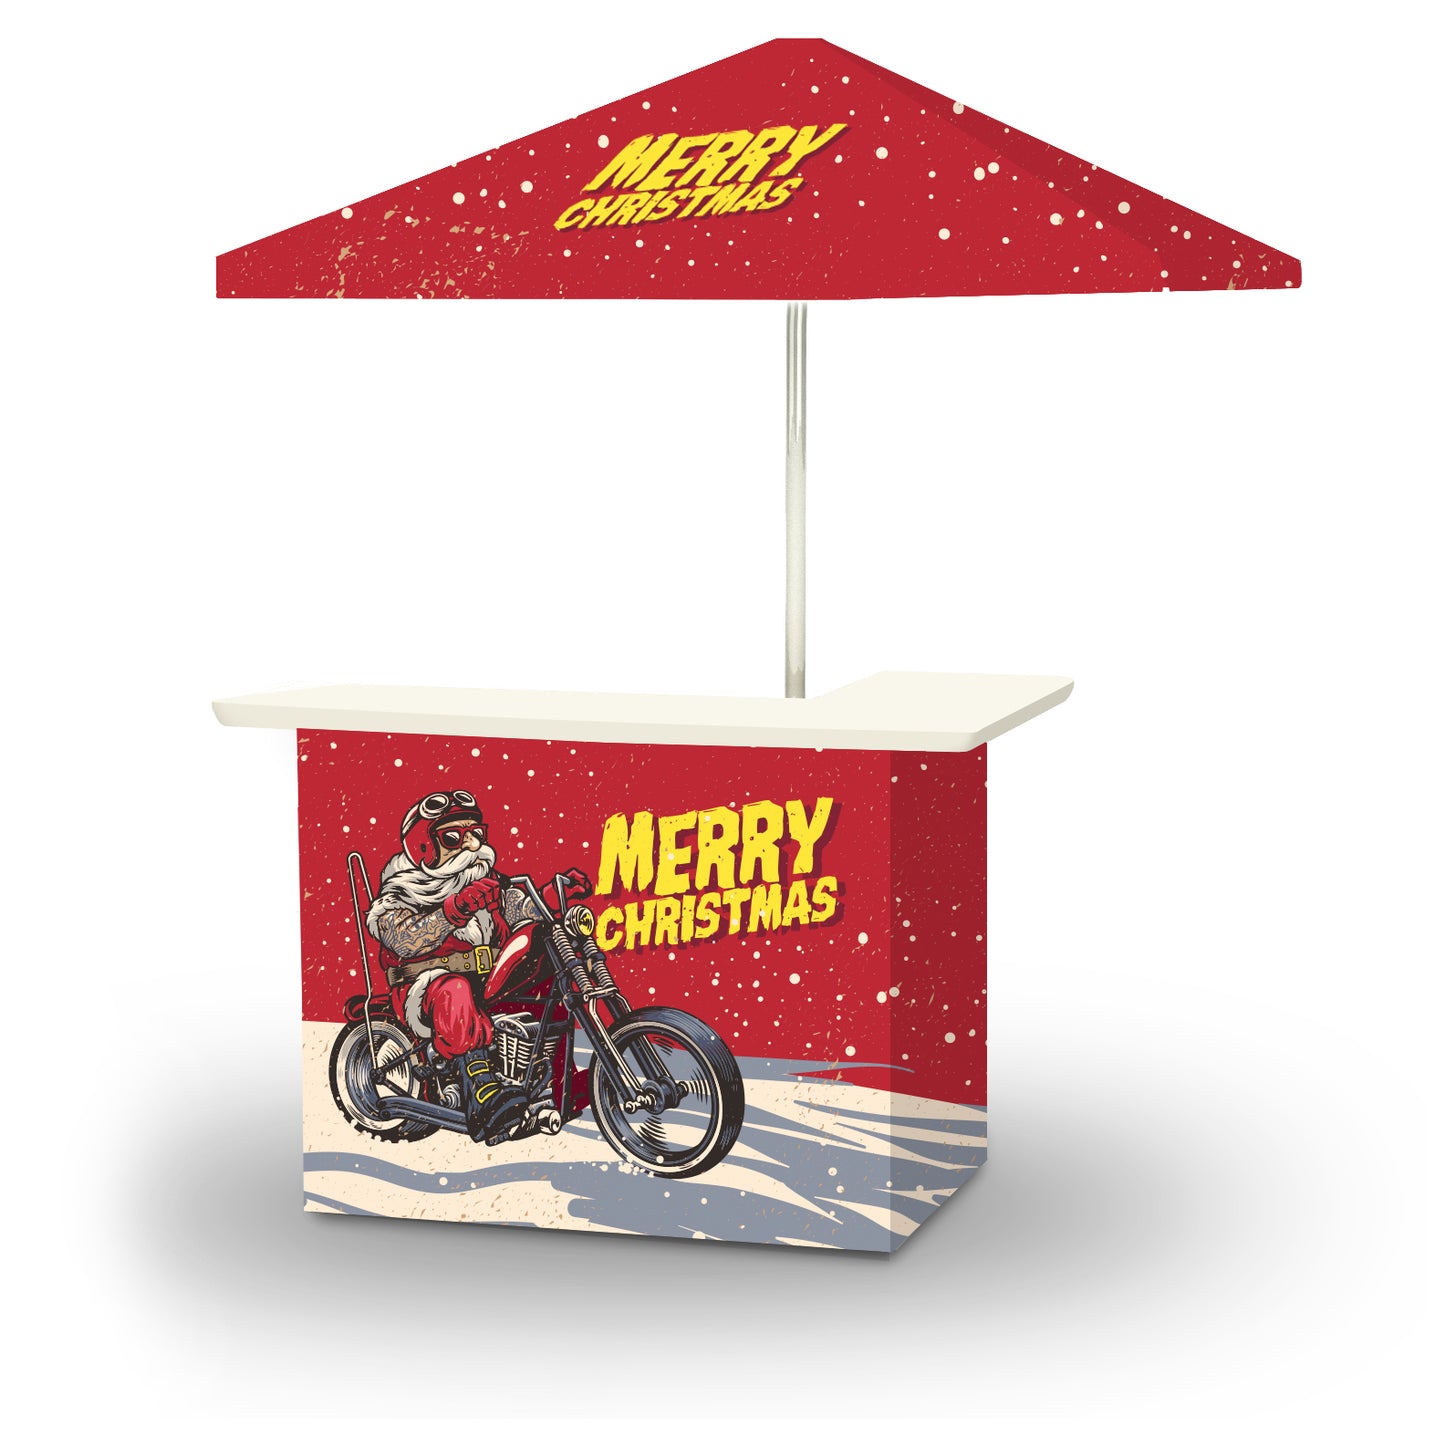 Christmas - Motorcycle Santa